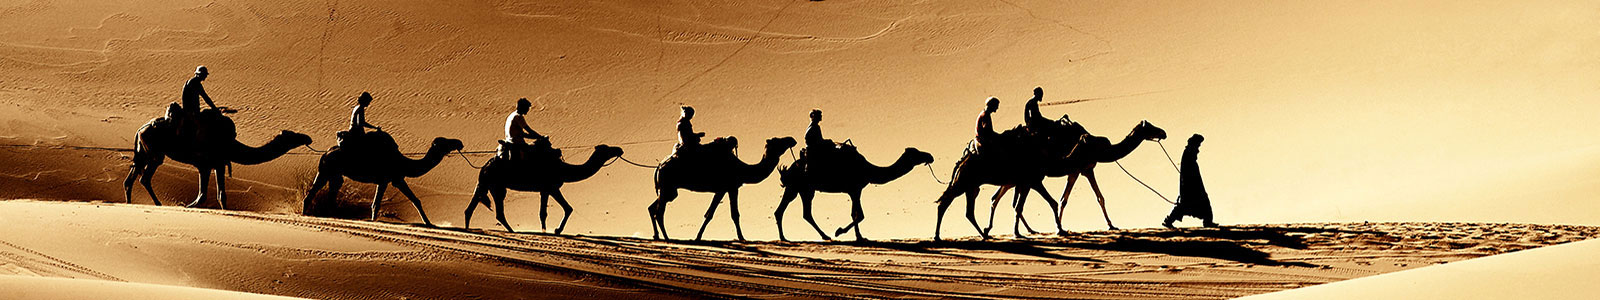 №864 - Каравае верблюдов идет по пустыне